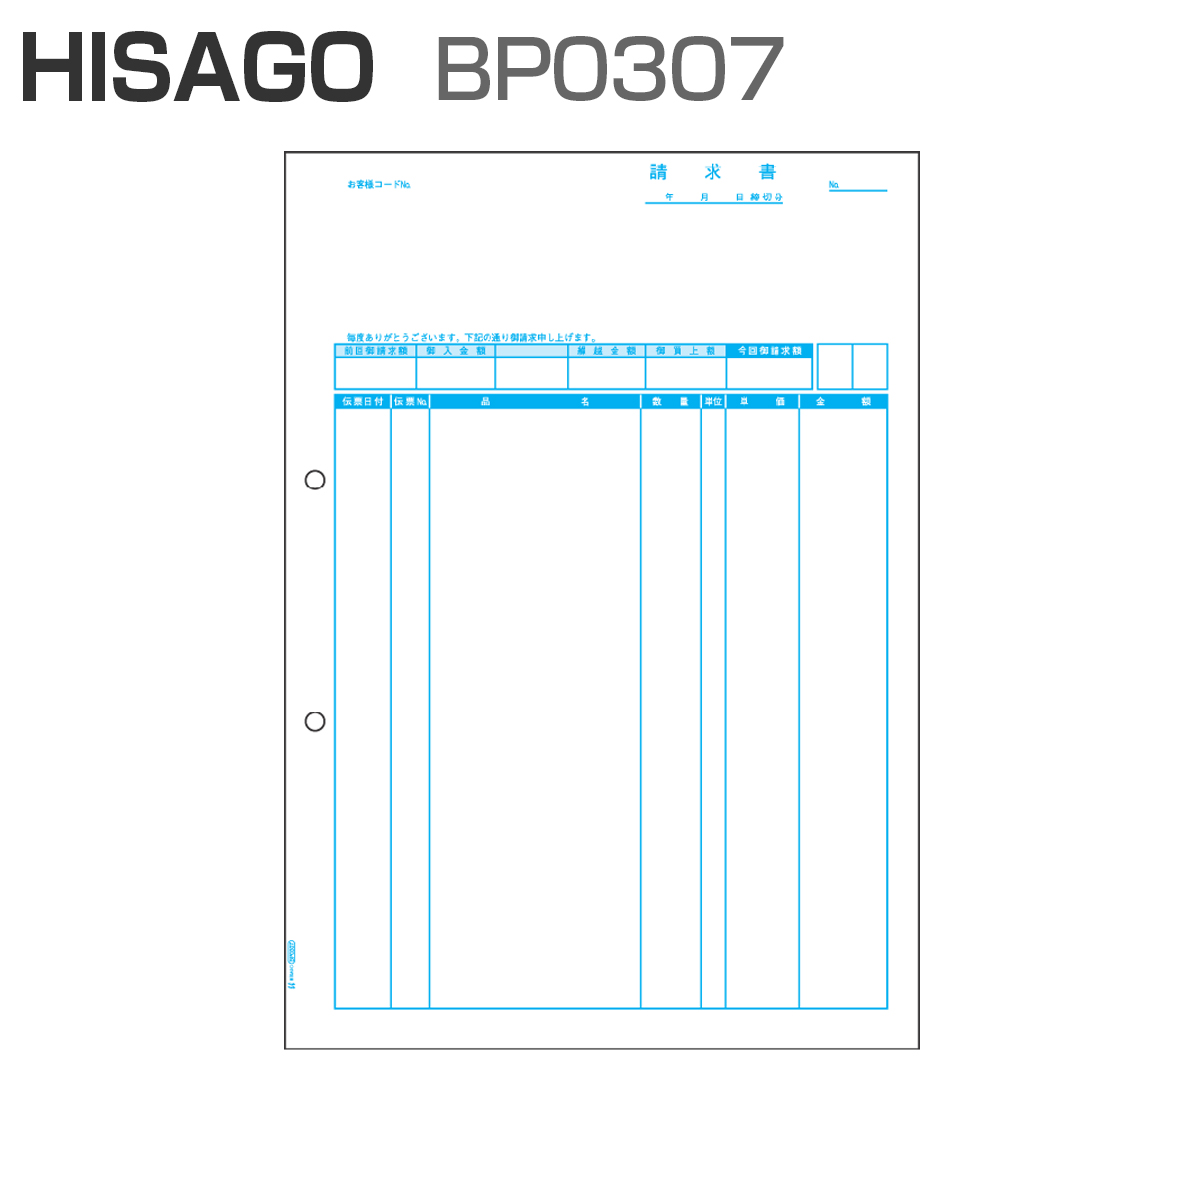 ヒサゴ BP0307 ベストプライス版 請求書 【品名別】 (500枚)